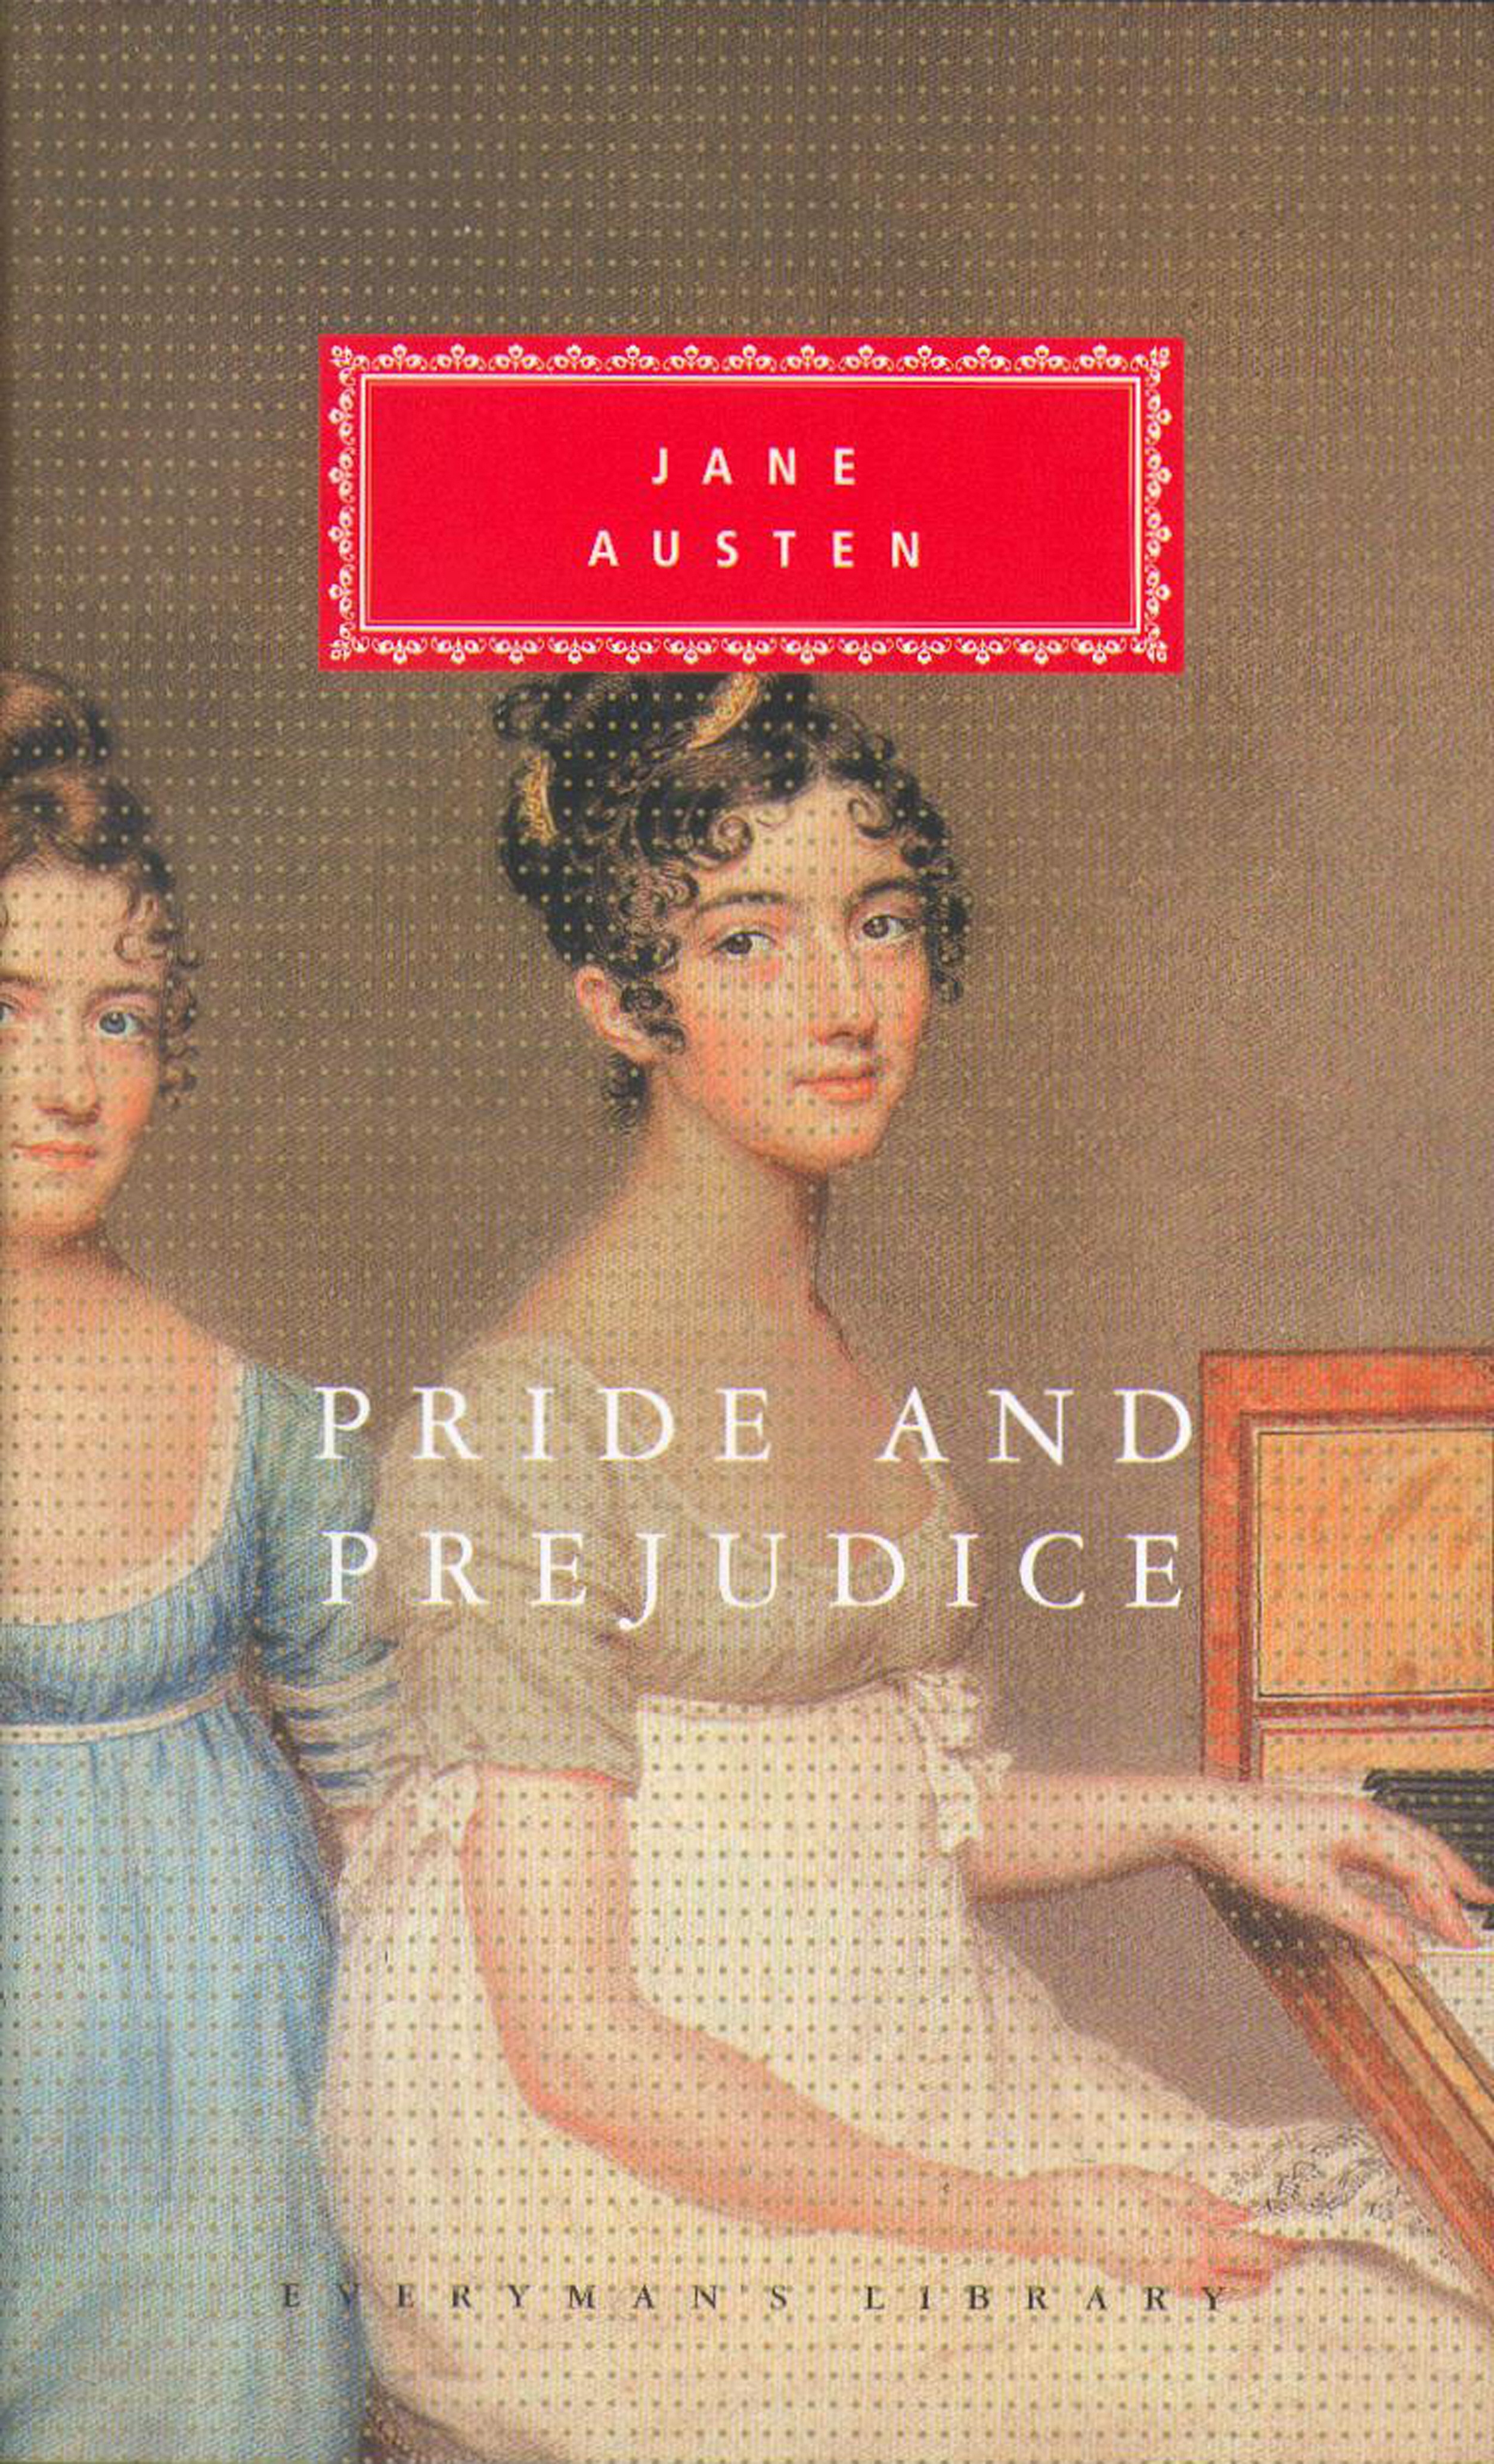 Book “Pride And Prejudice” by Jane Austen — September 26, 1991